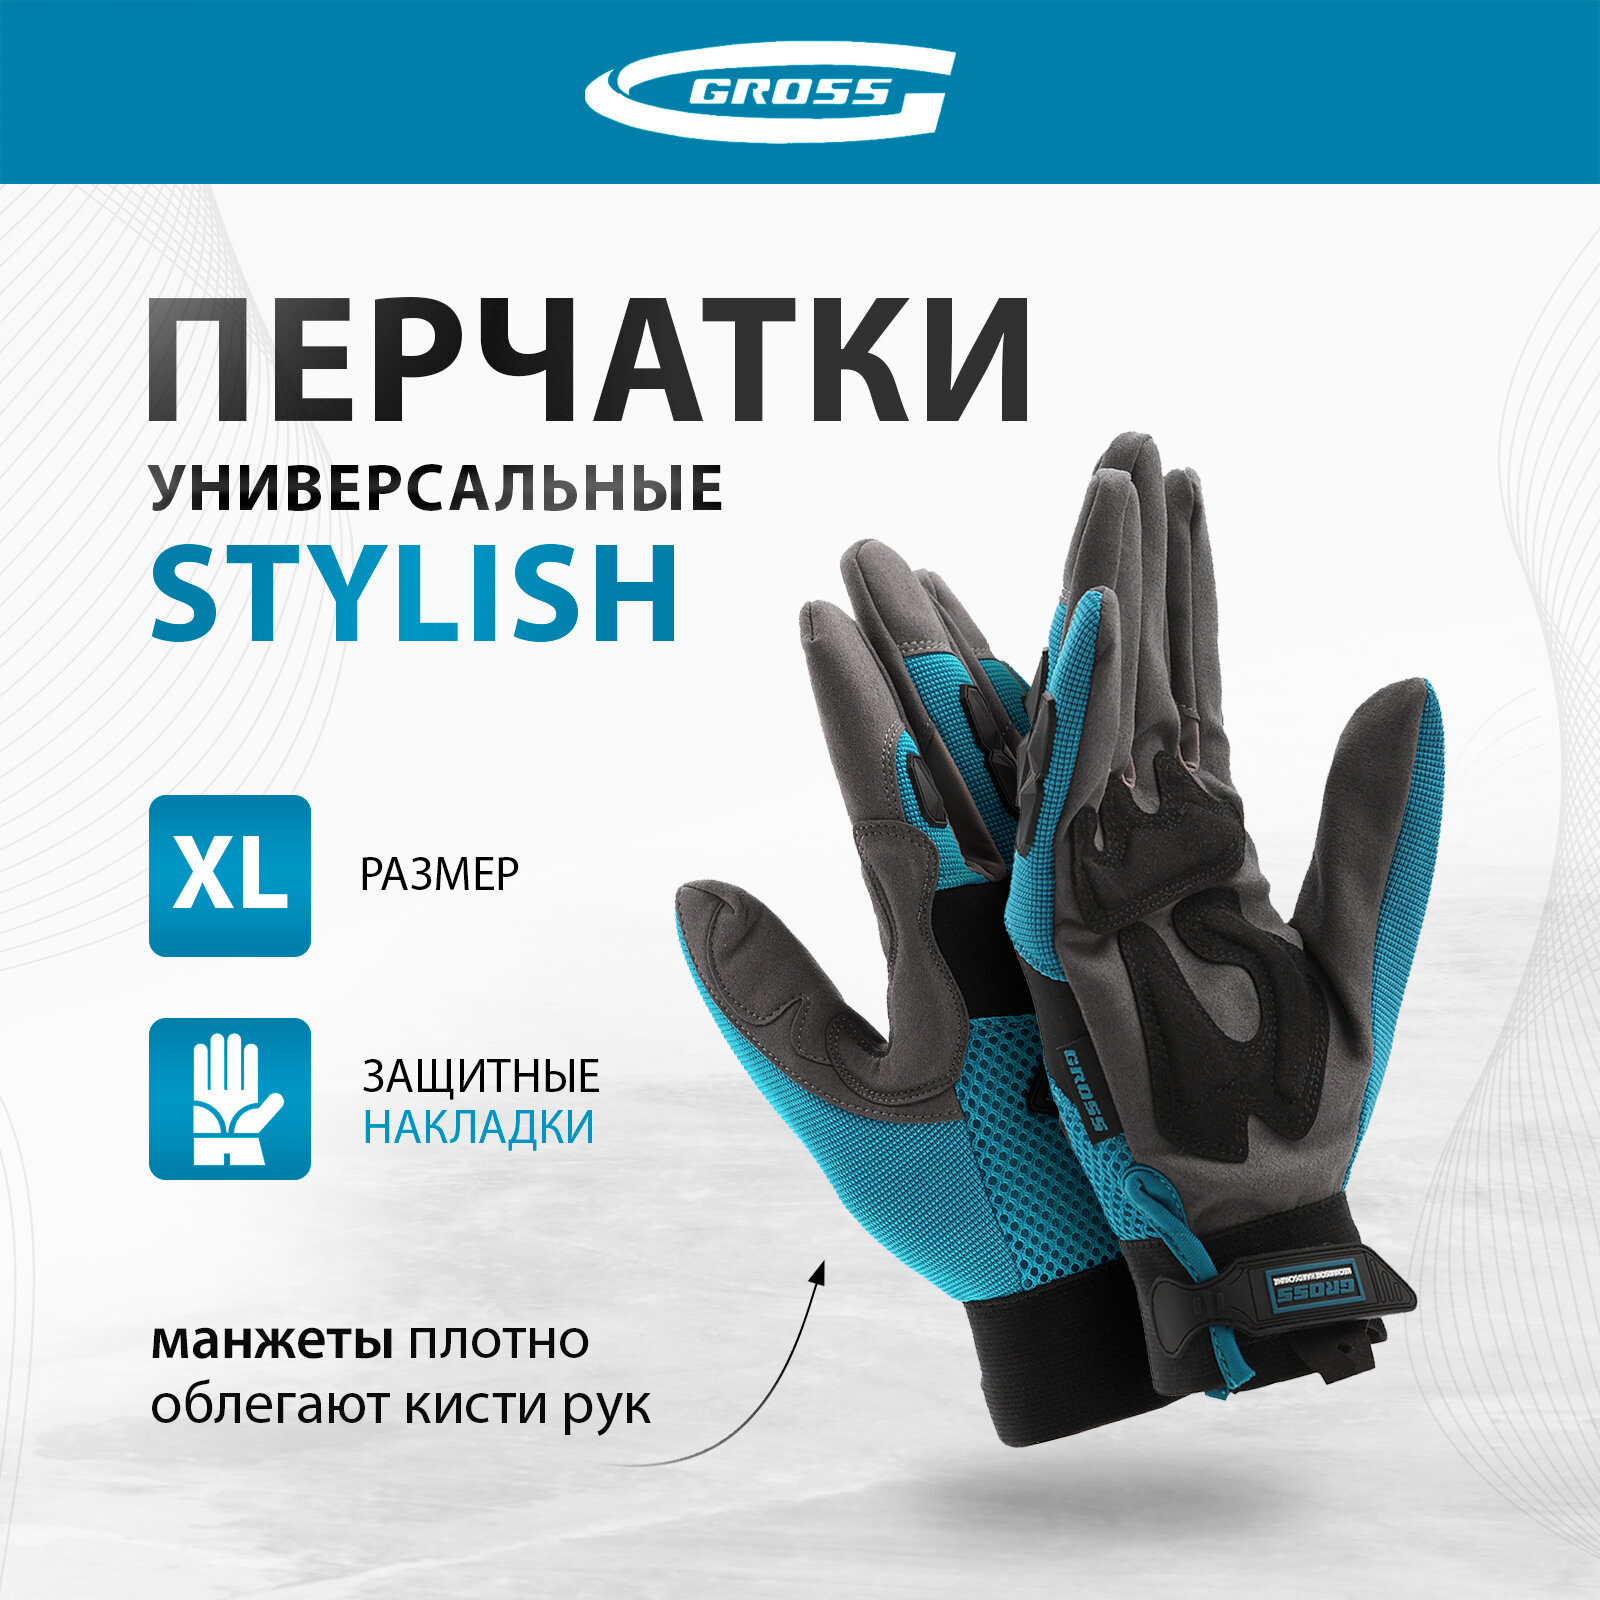 Перчатки универсальные комбинированные, с защитными накладками Gross STYLISH размер XL (10) 90320